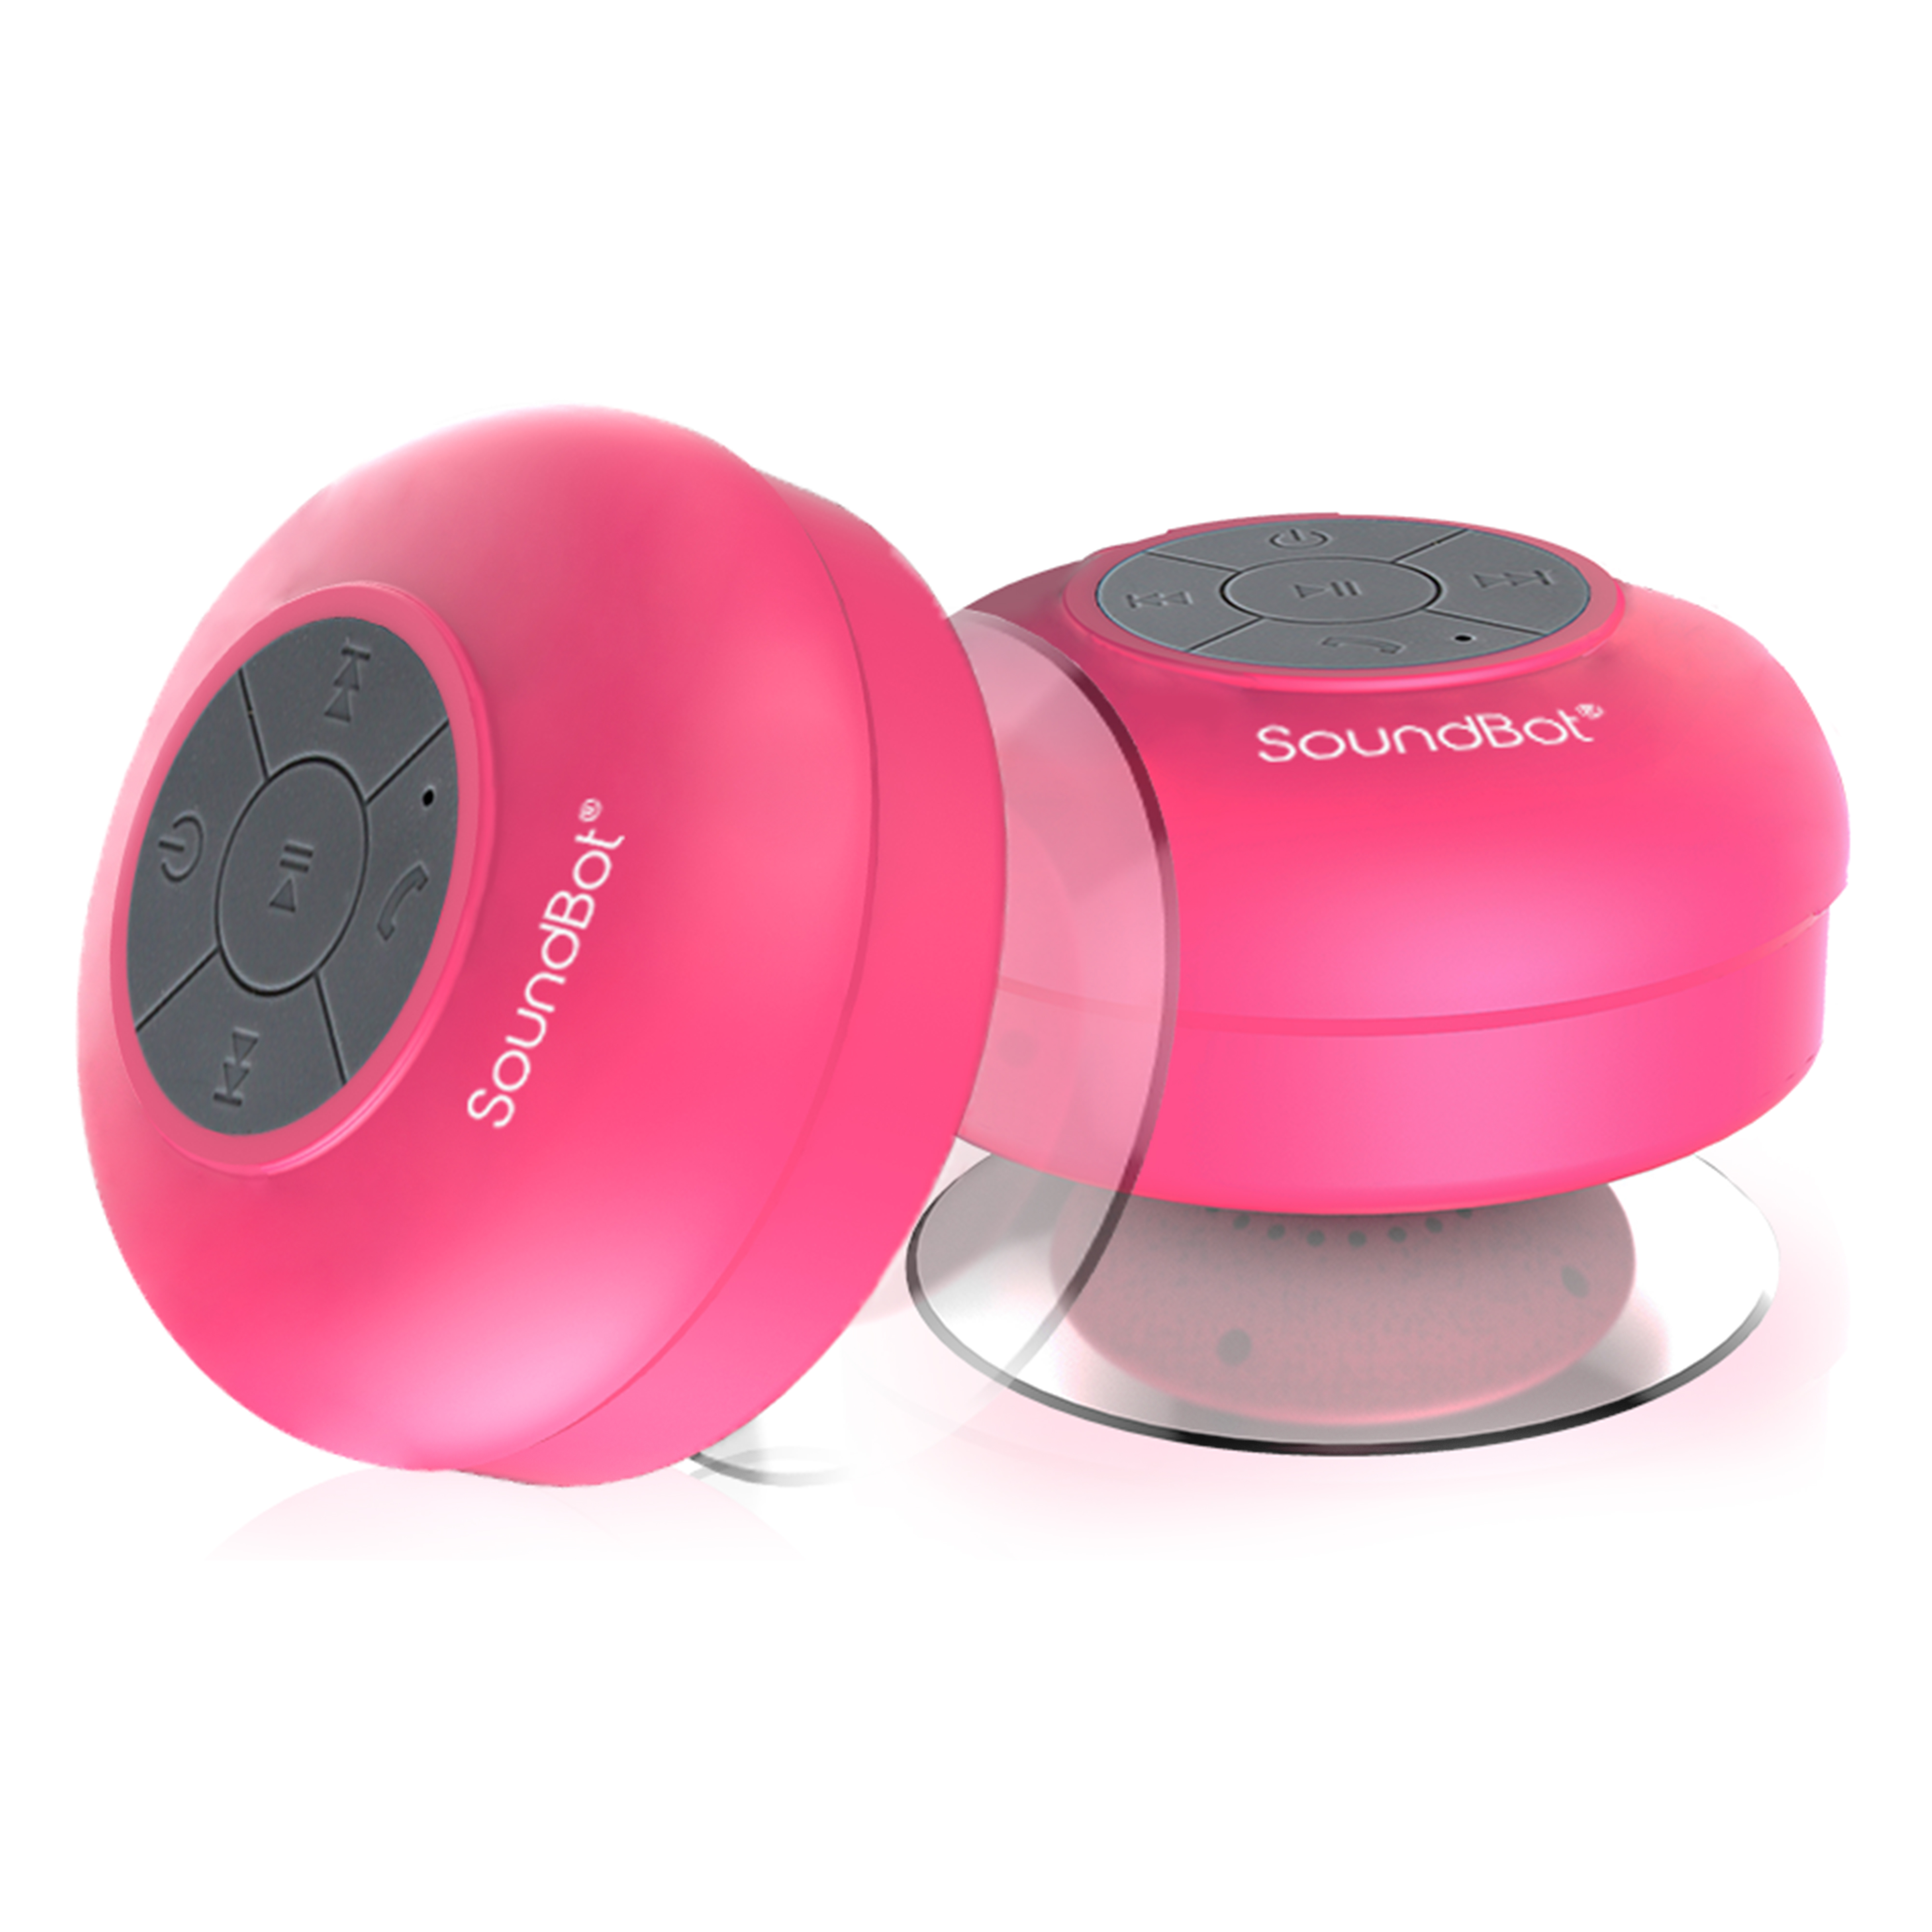 SoundBot SB510 1.59 oz Water Resistant Bluetooth Shower Speaker - Pink - image 4 of 5